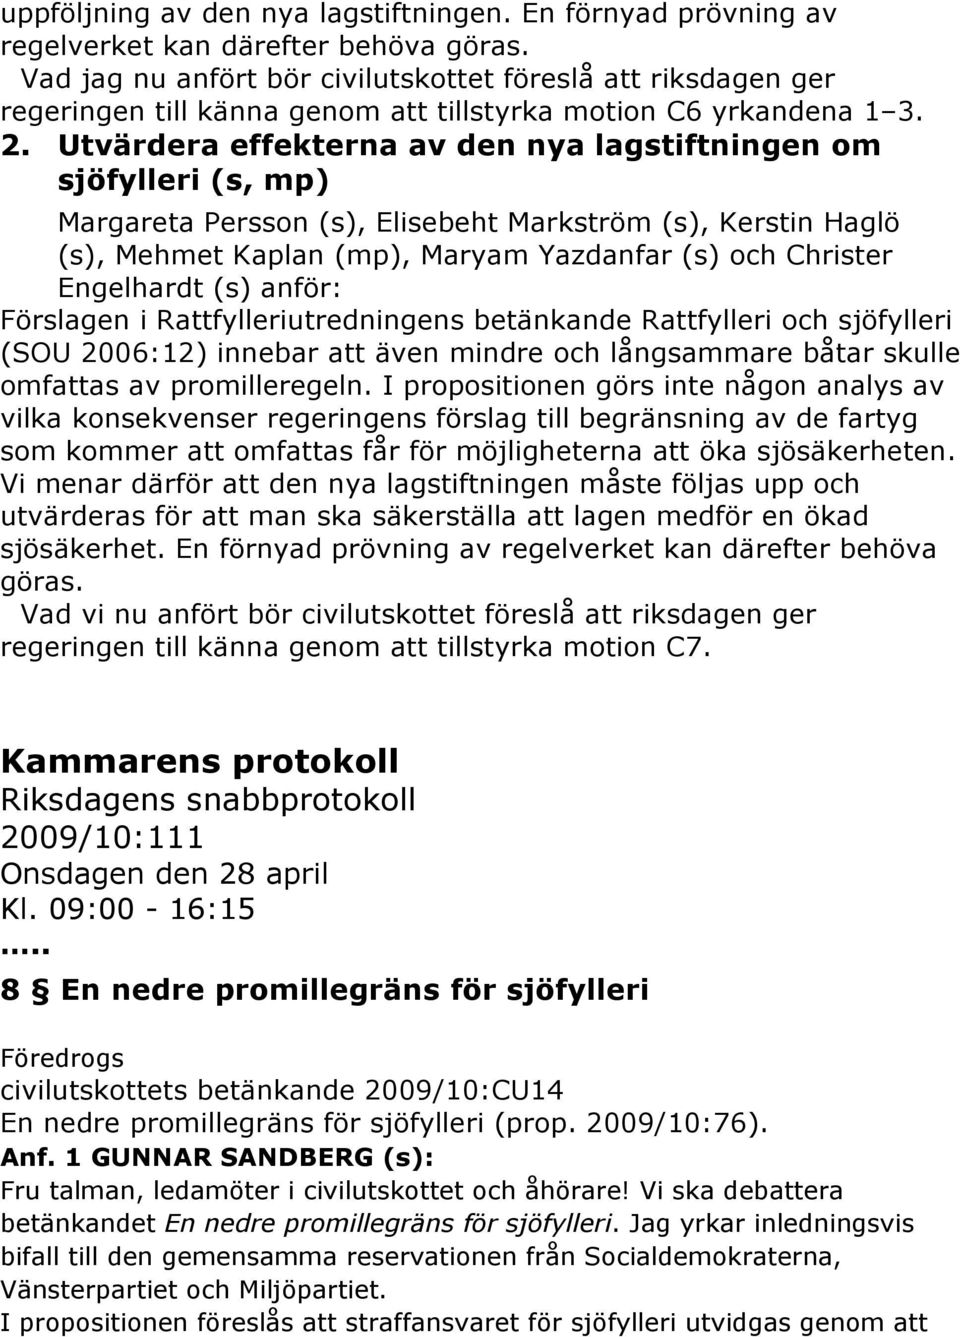 Utvärdera effekterna av den nya lagstiftningen om sjöfylleri (s, mp) Margareta Persson (s), Elisebeht Markström (s), Kerstin Haglö (s), Mehmet Kaplan (mp), Maryam Yazdanfar (s) och Christer